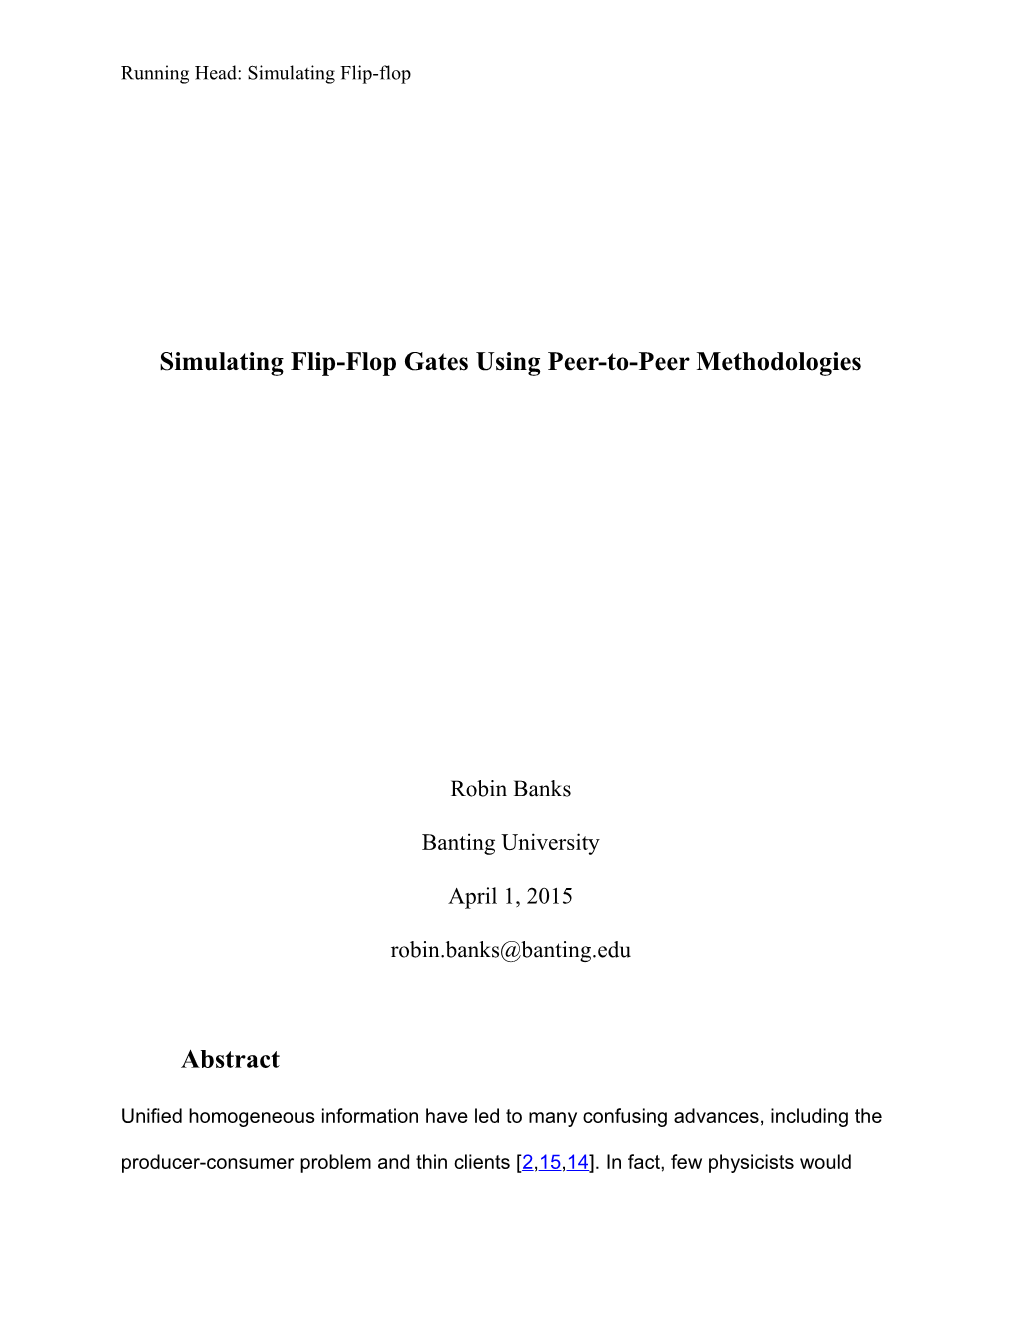 Simulating Flip-Flop Gates Using Peer-To-Peer Methodologies